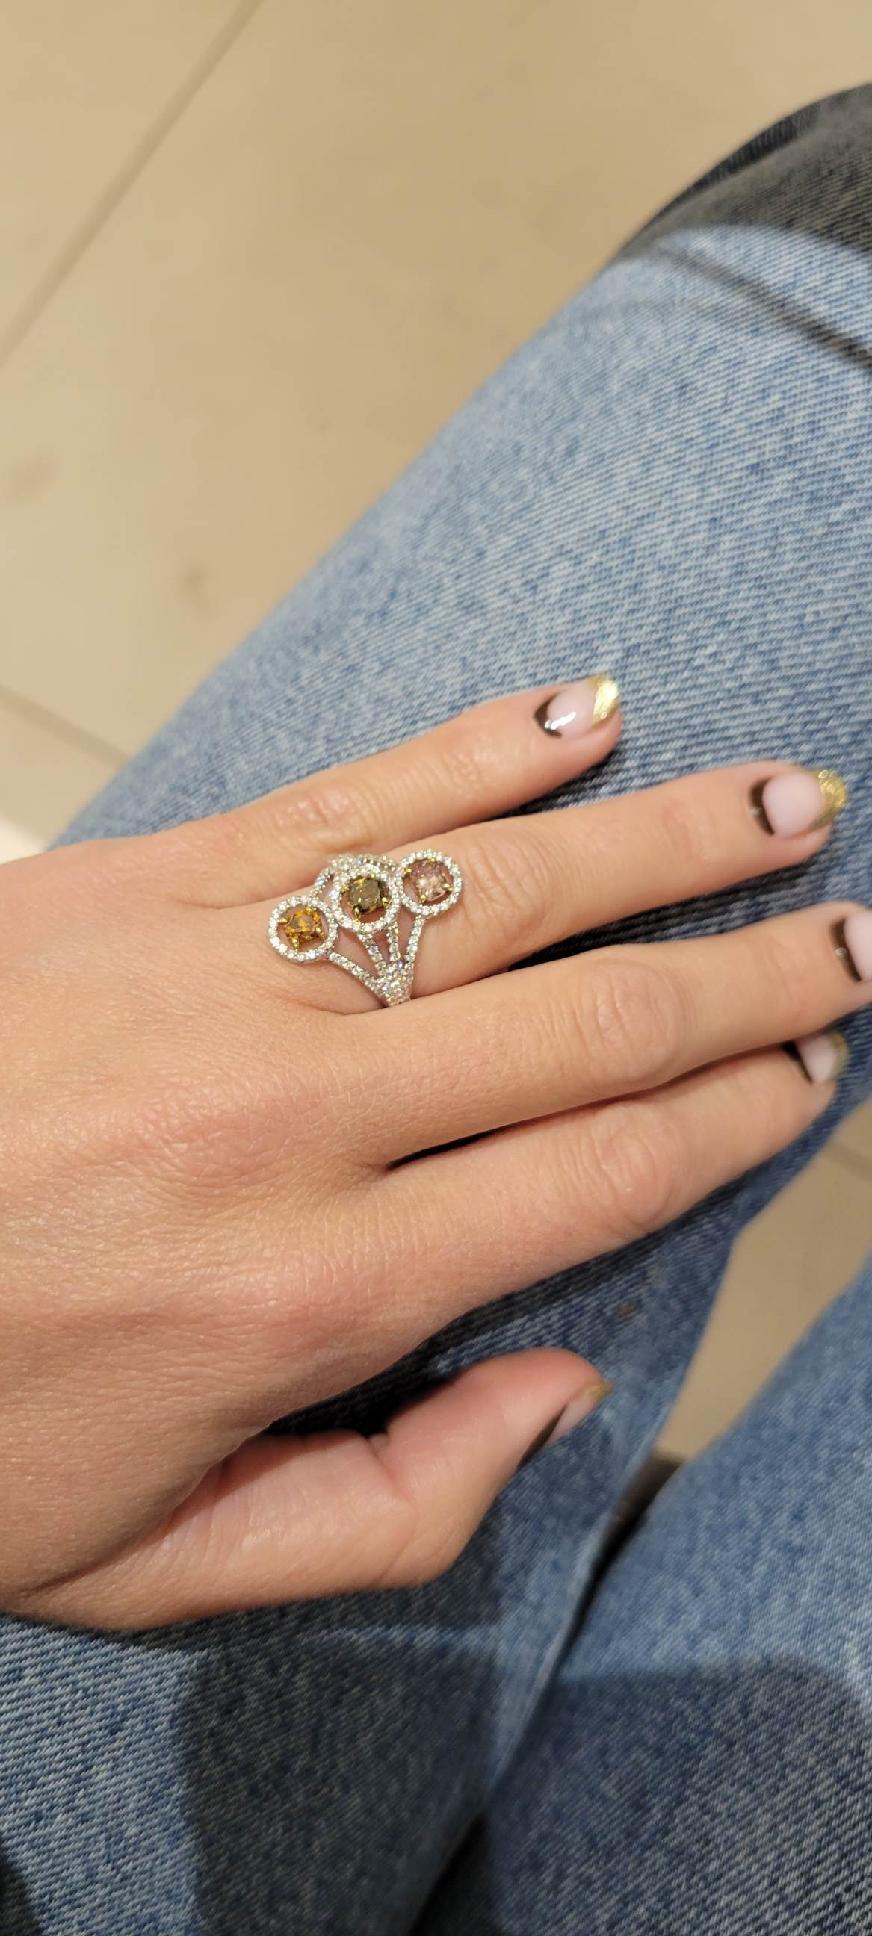 18 Karat White Gold Fancy Colored 1.02 Carat Orange, Green, & Pink Diamond Ring For Sale 2